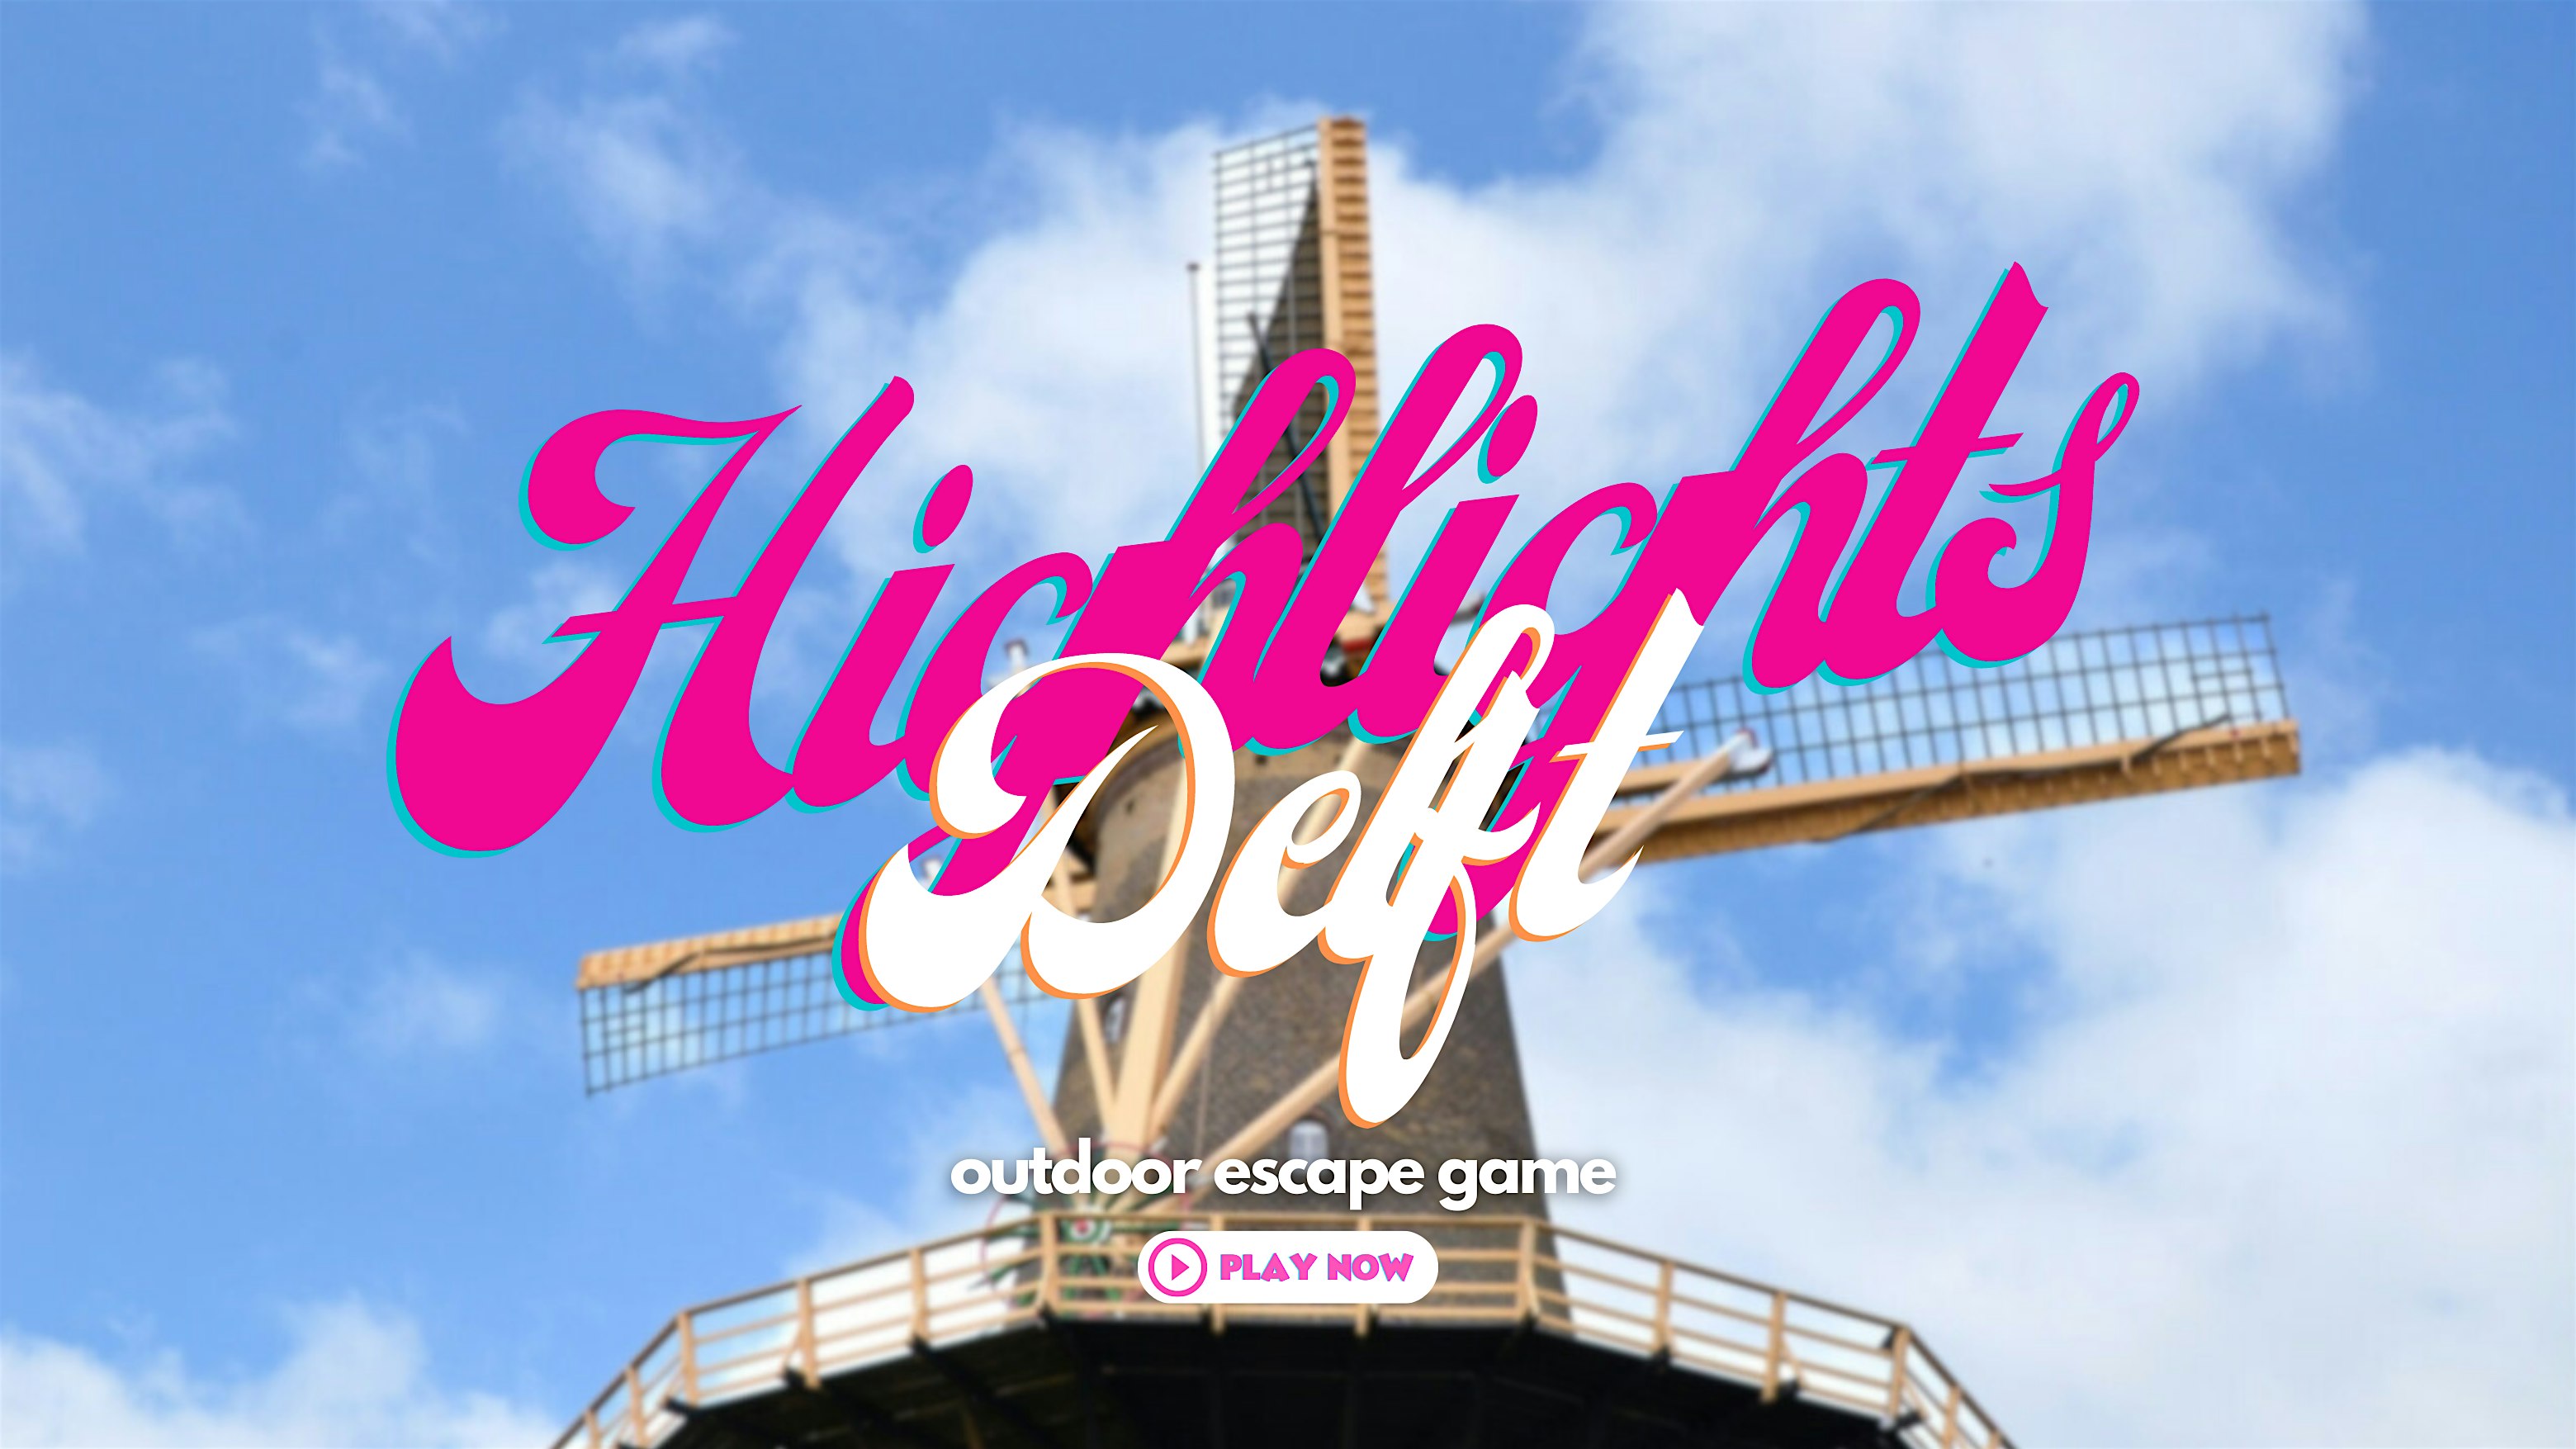 Delft Highlights: Outdoor Escape Game